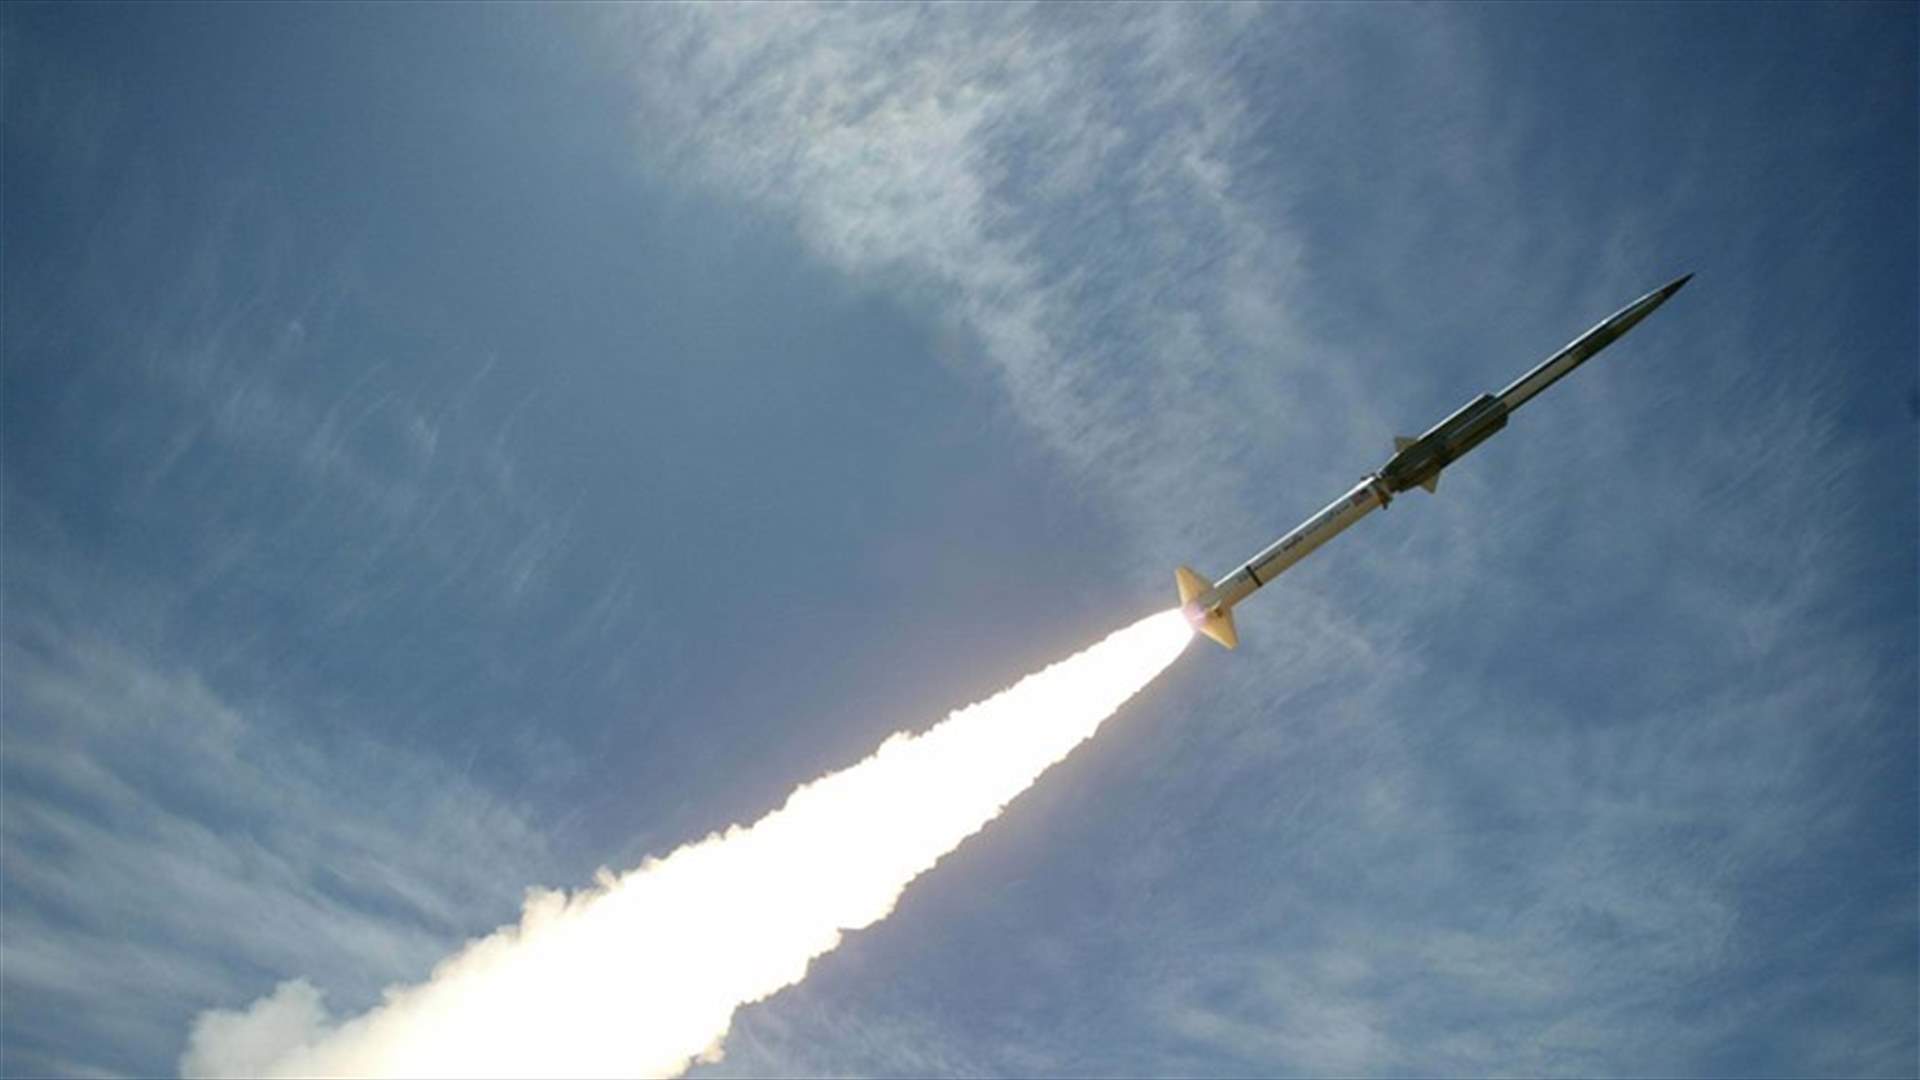 إسرائيل أجرت تجارب لصواريخ بالستية يبلغ مداها 400 كلم... اليكم التفاصيل